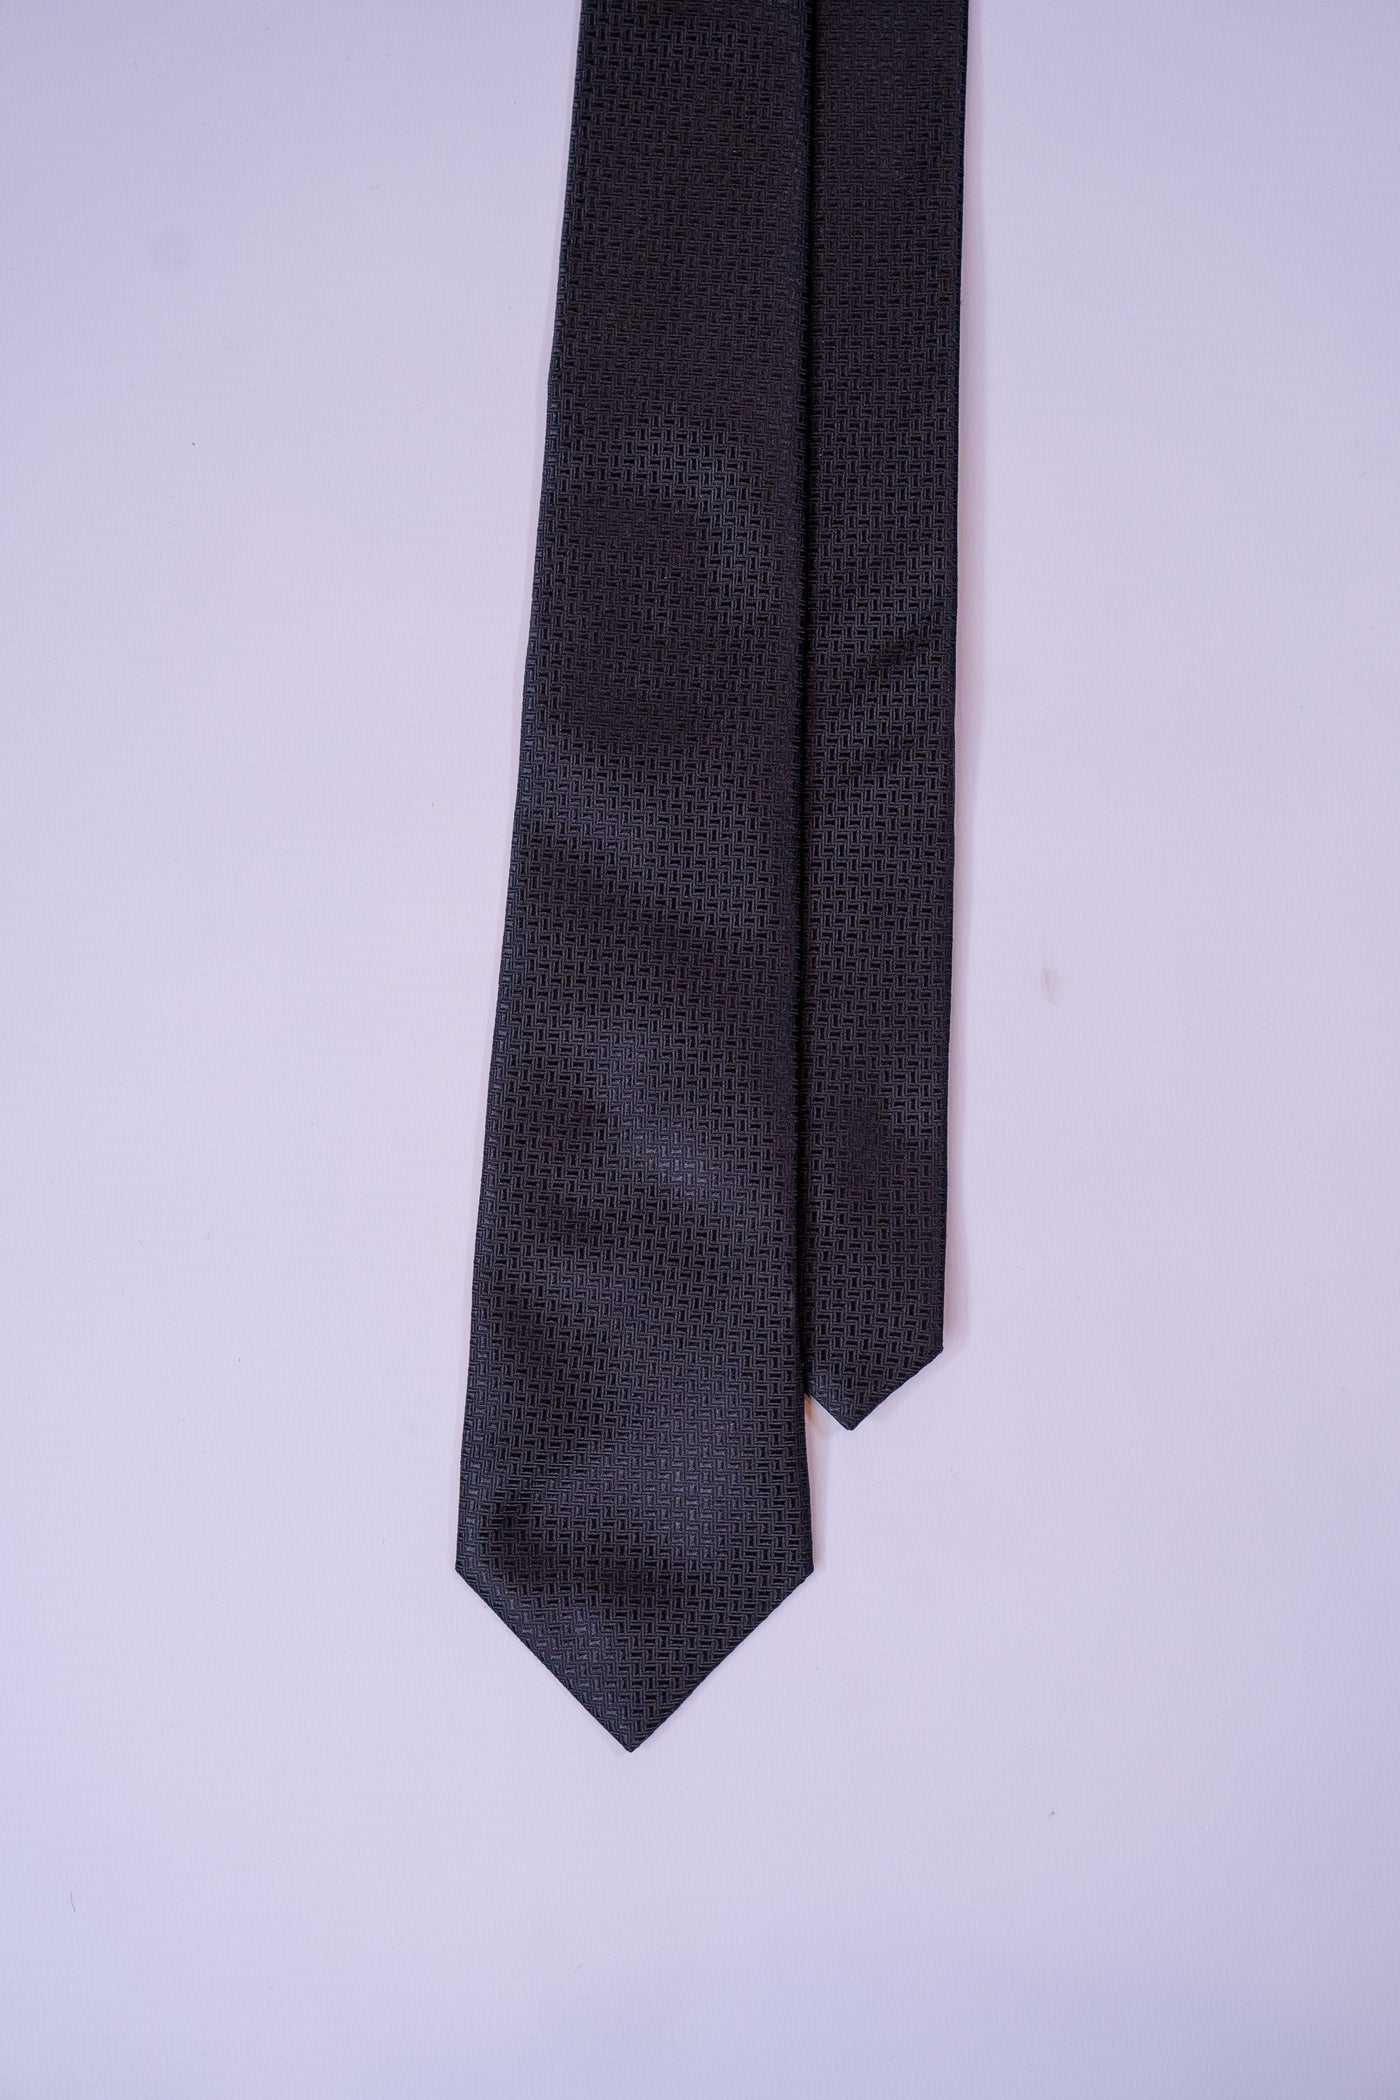 Golman Copenhagen sort slips med mønst